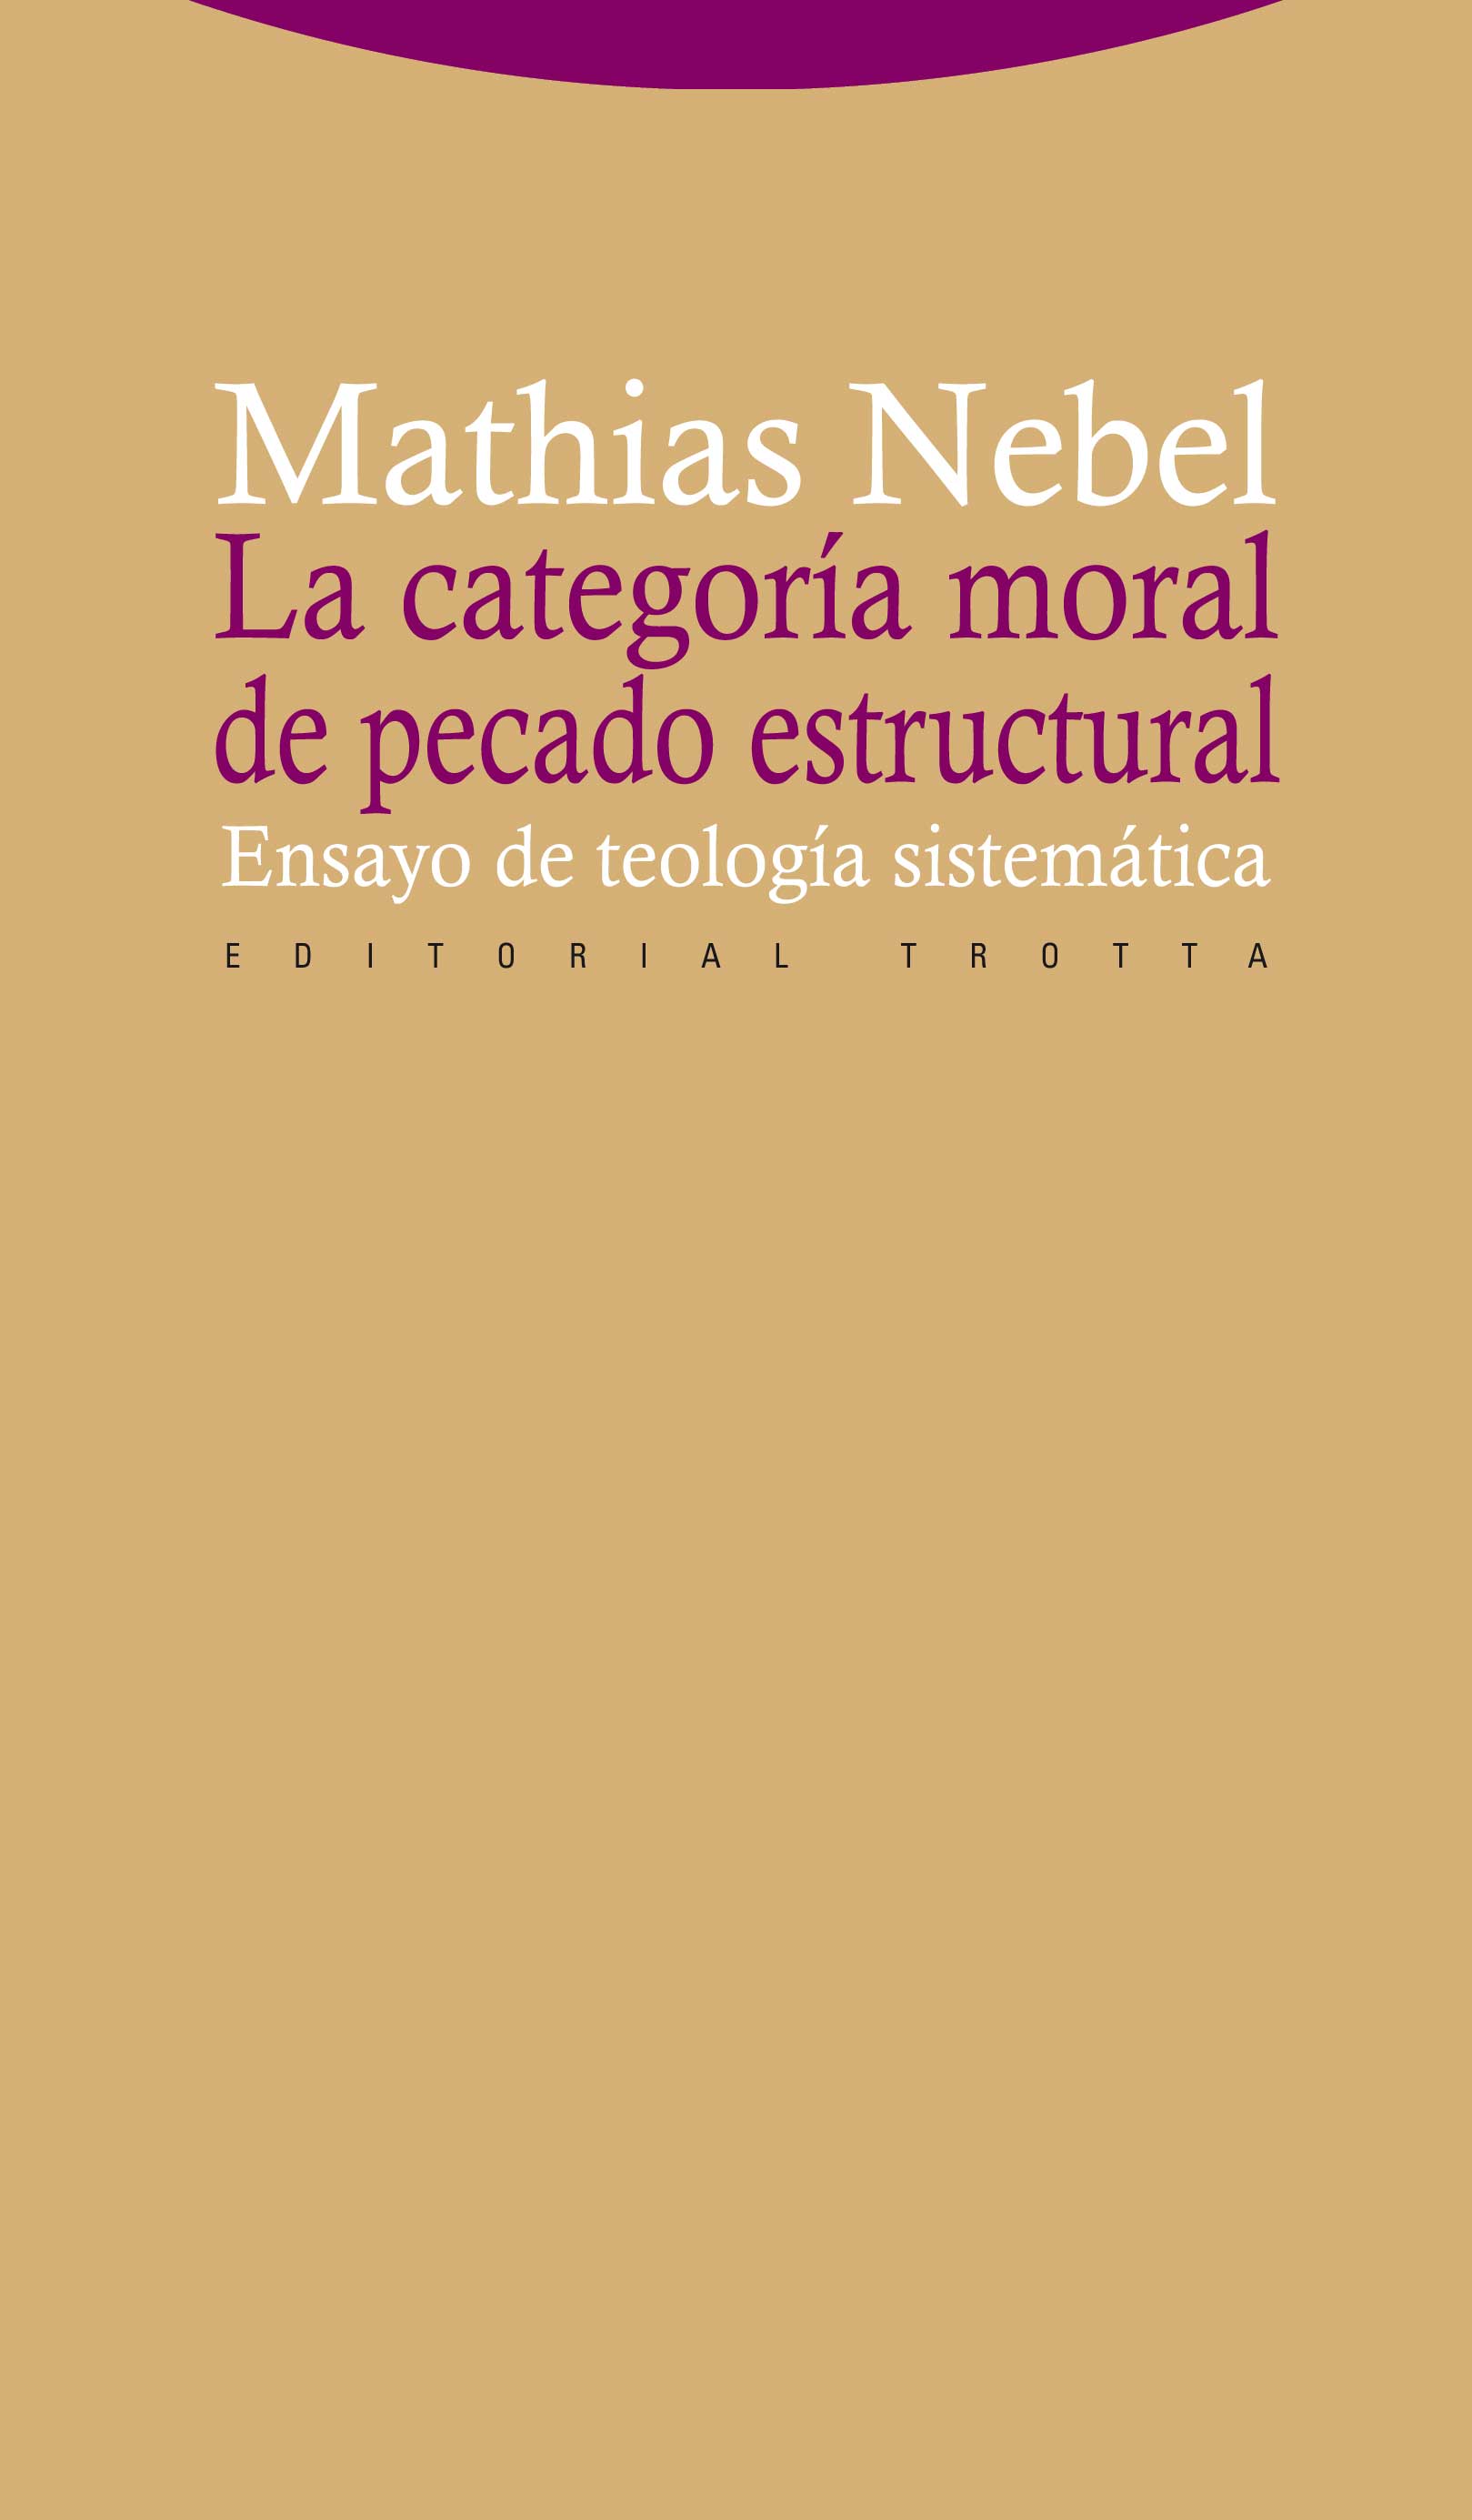 La categoría moral de pecado estructural